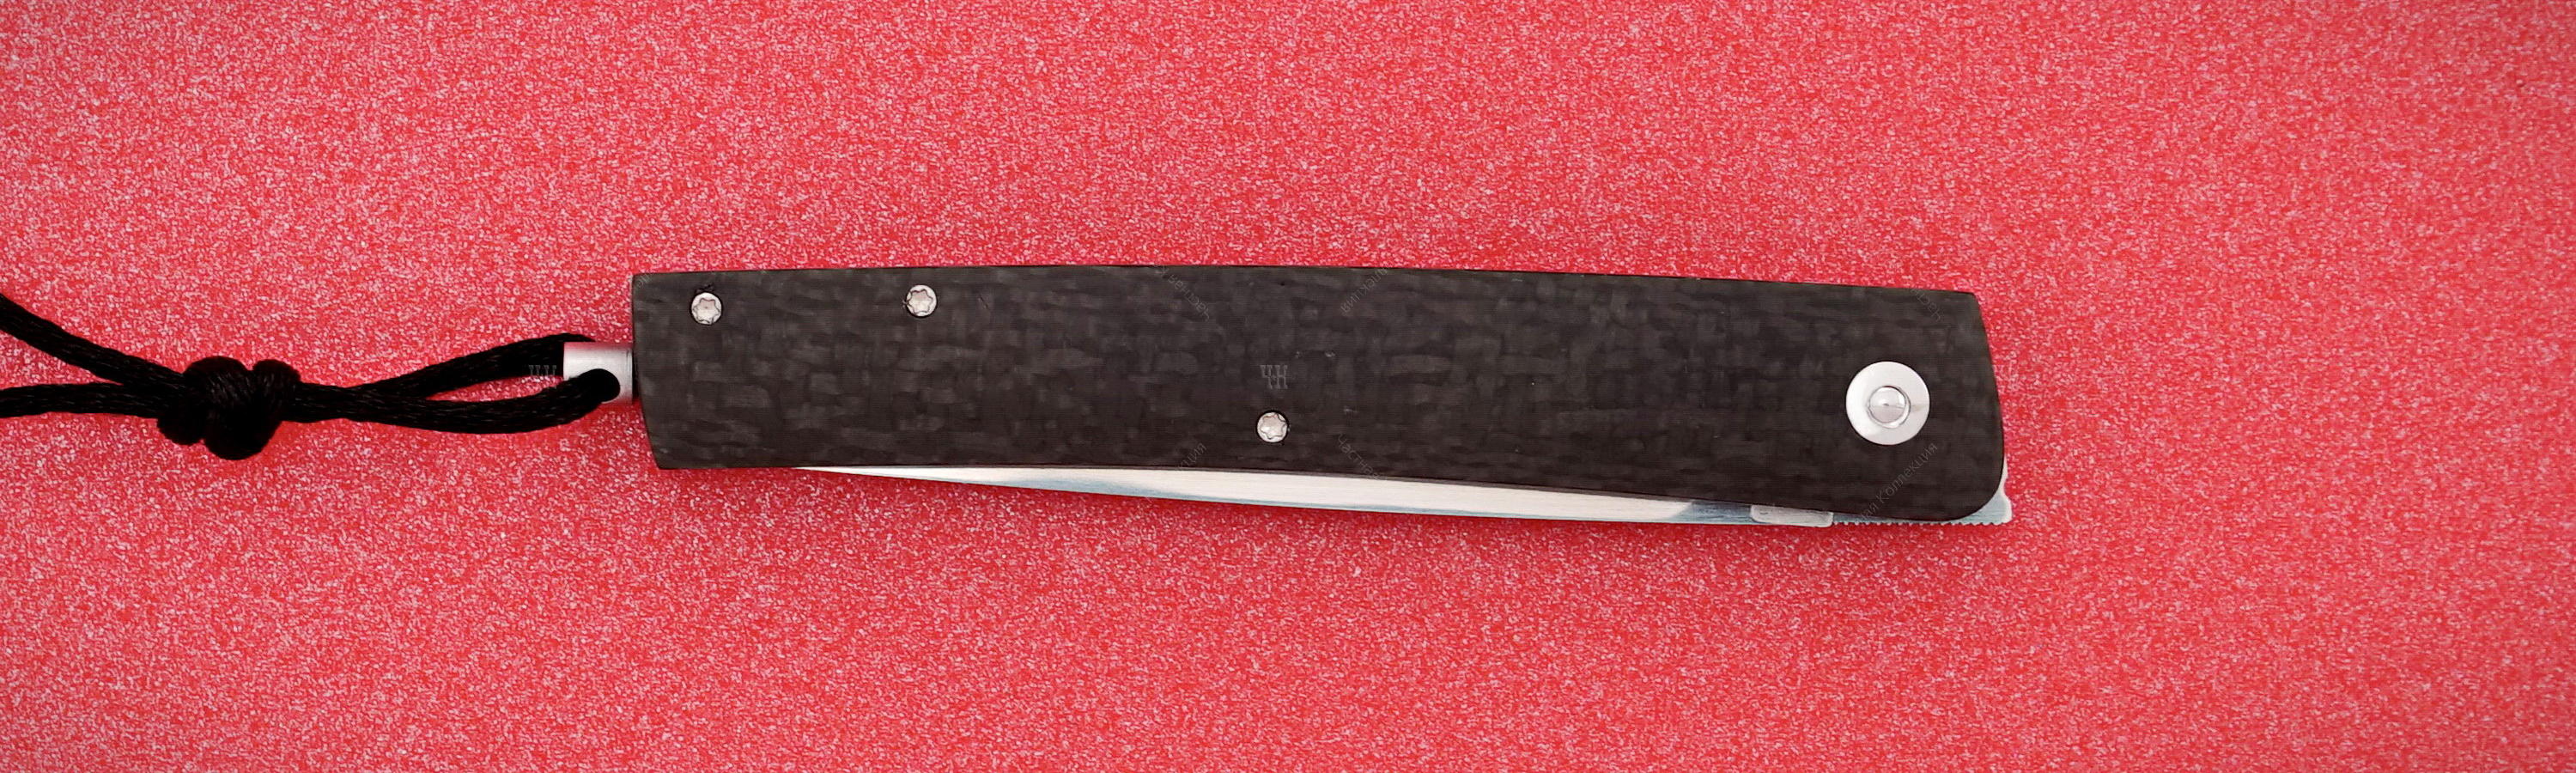 Сompact pocket knife